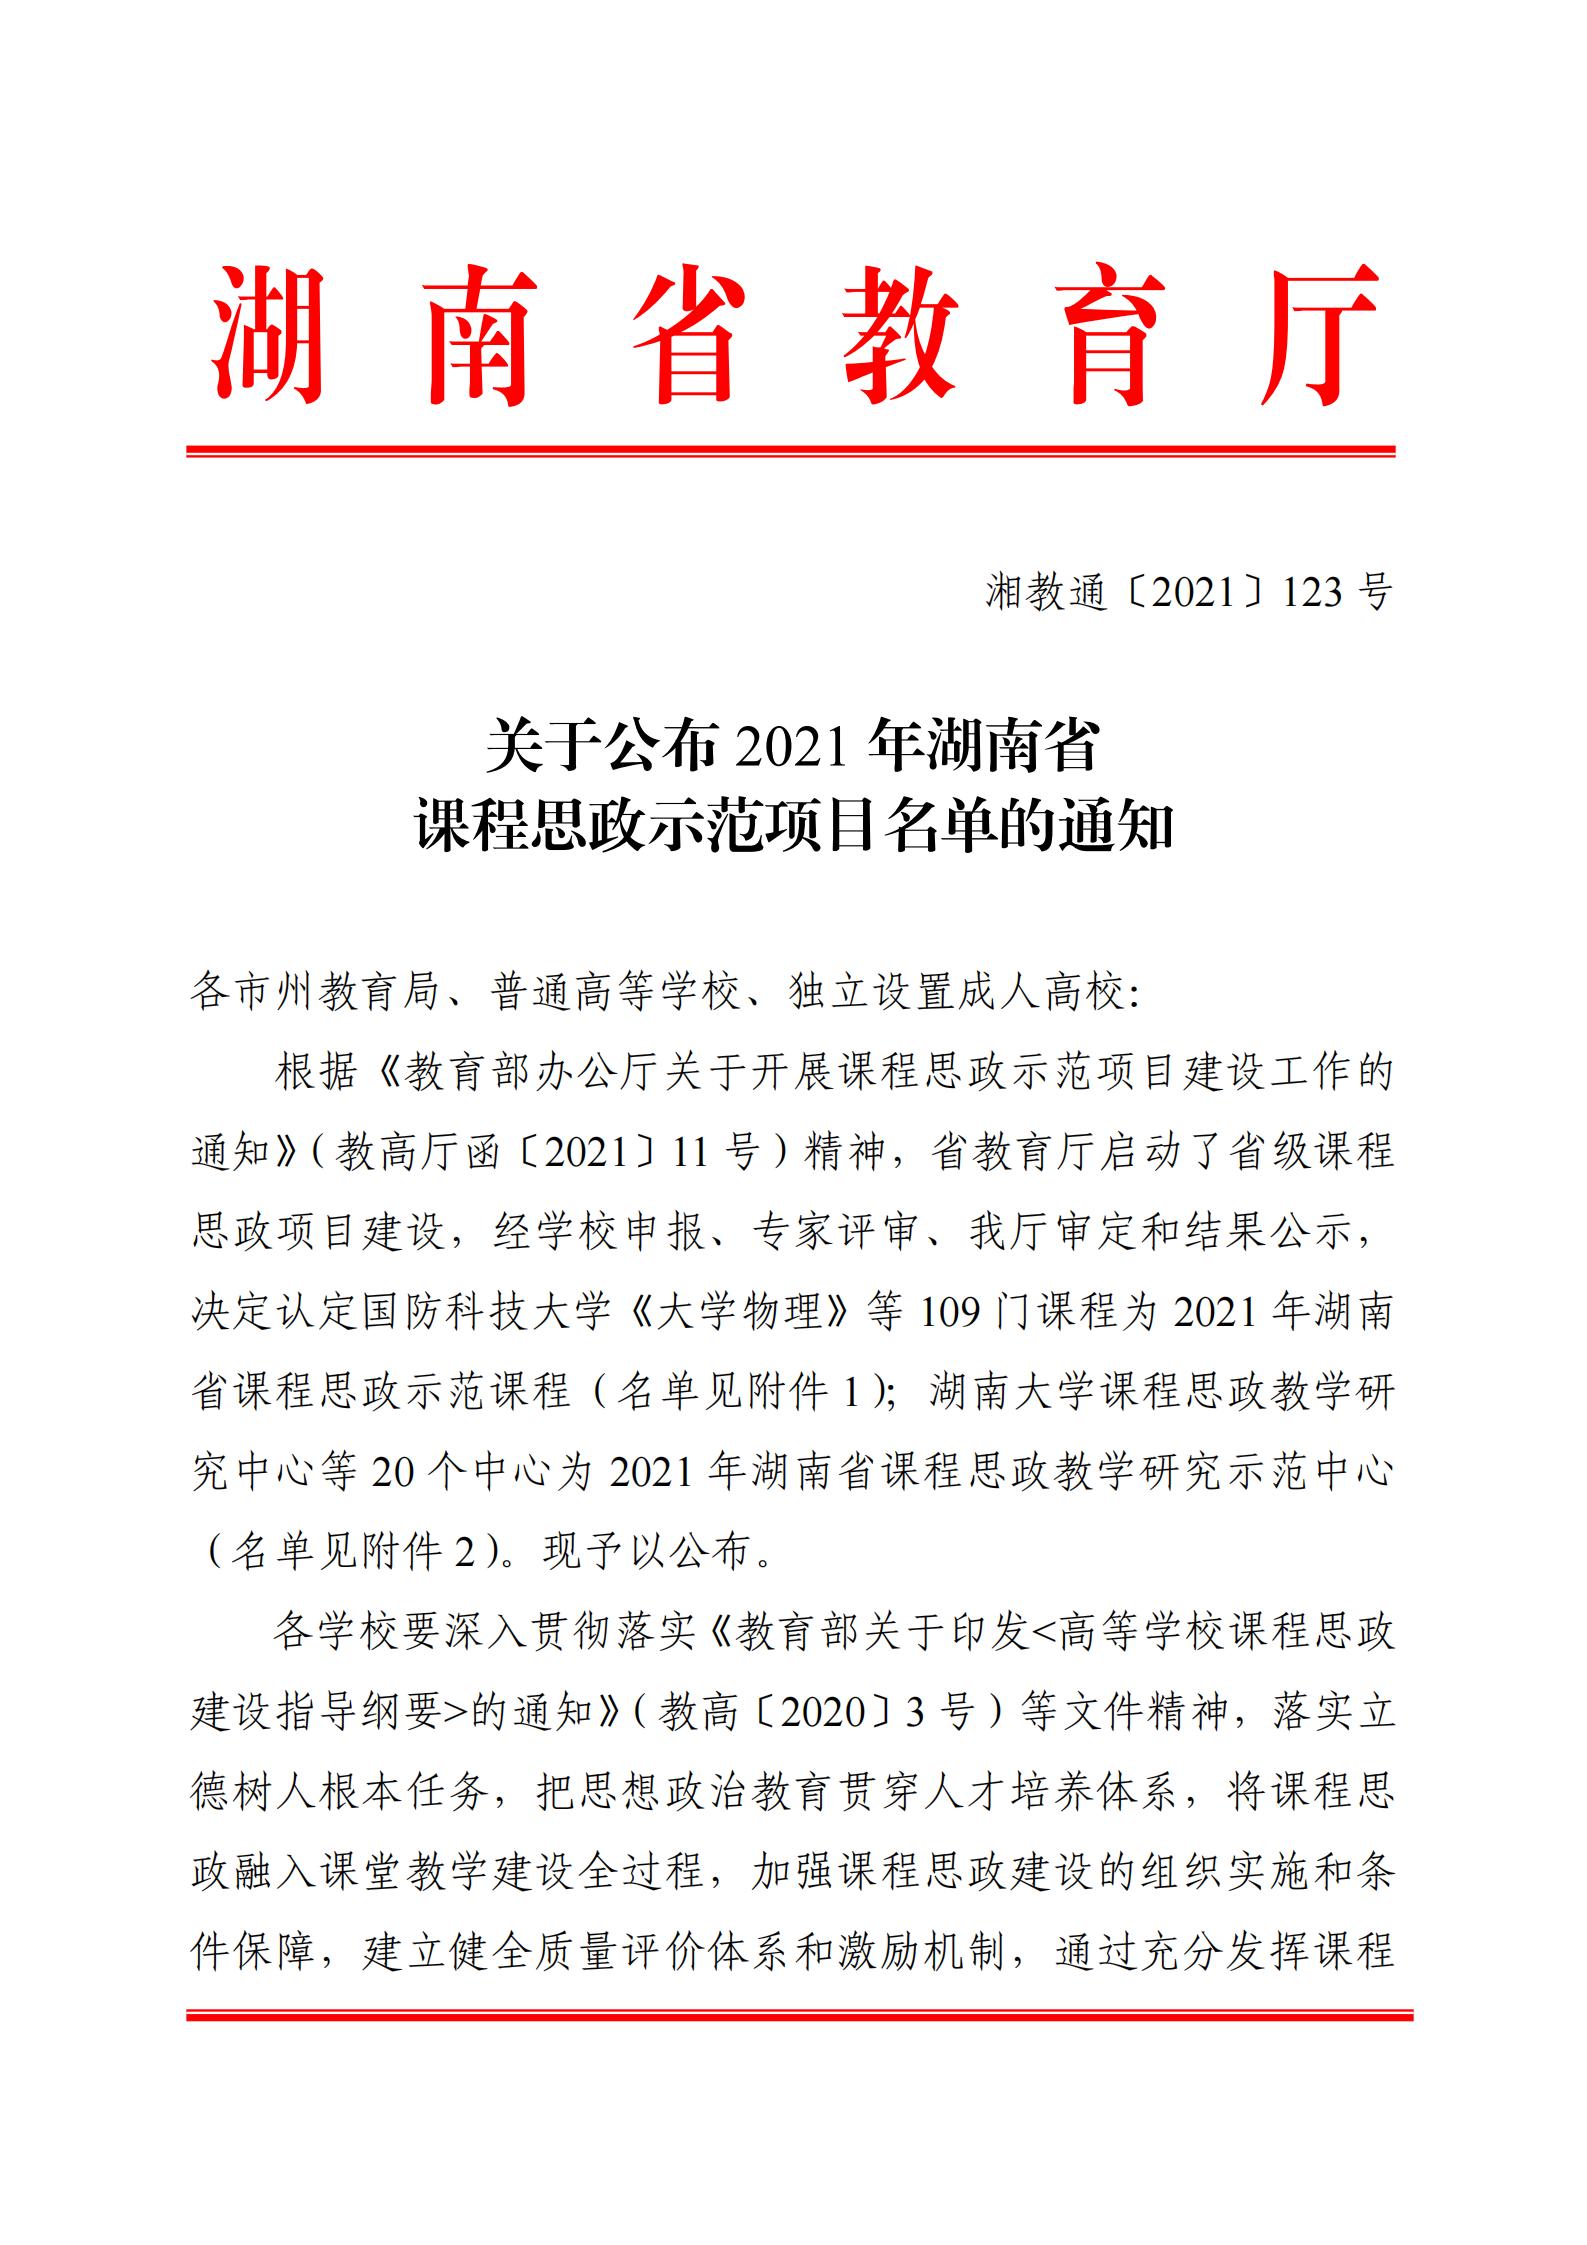 关于公布2021年湖南省课程思政示范项目名单的通知_00.jpg